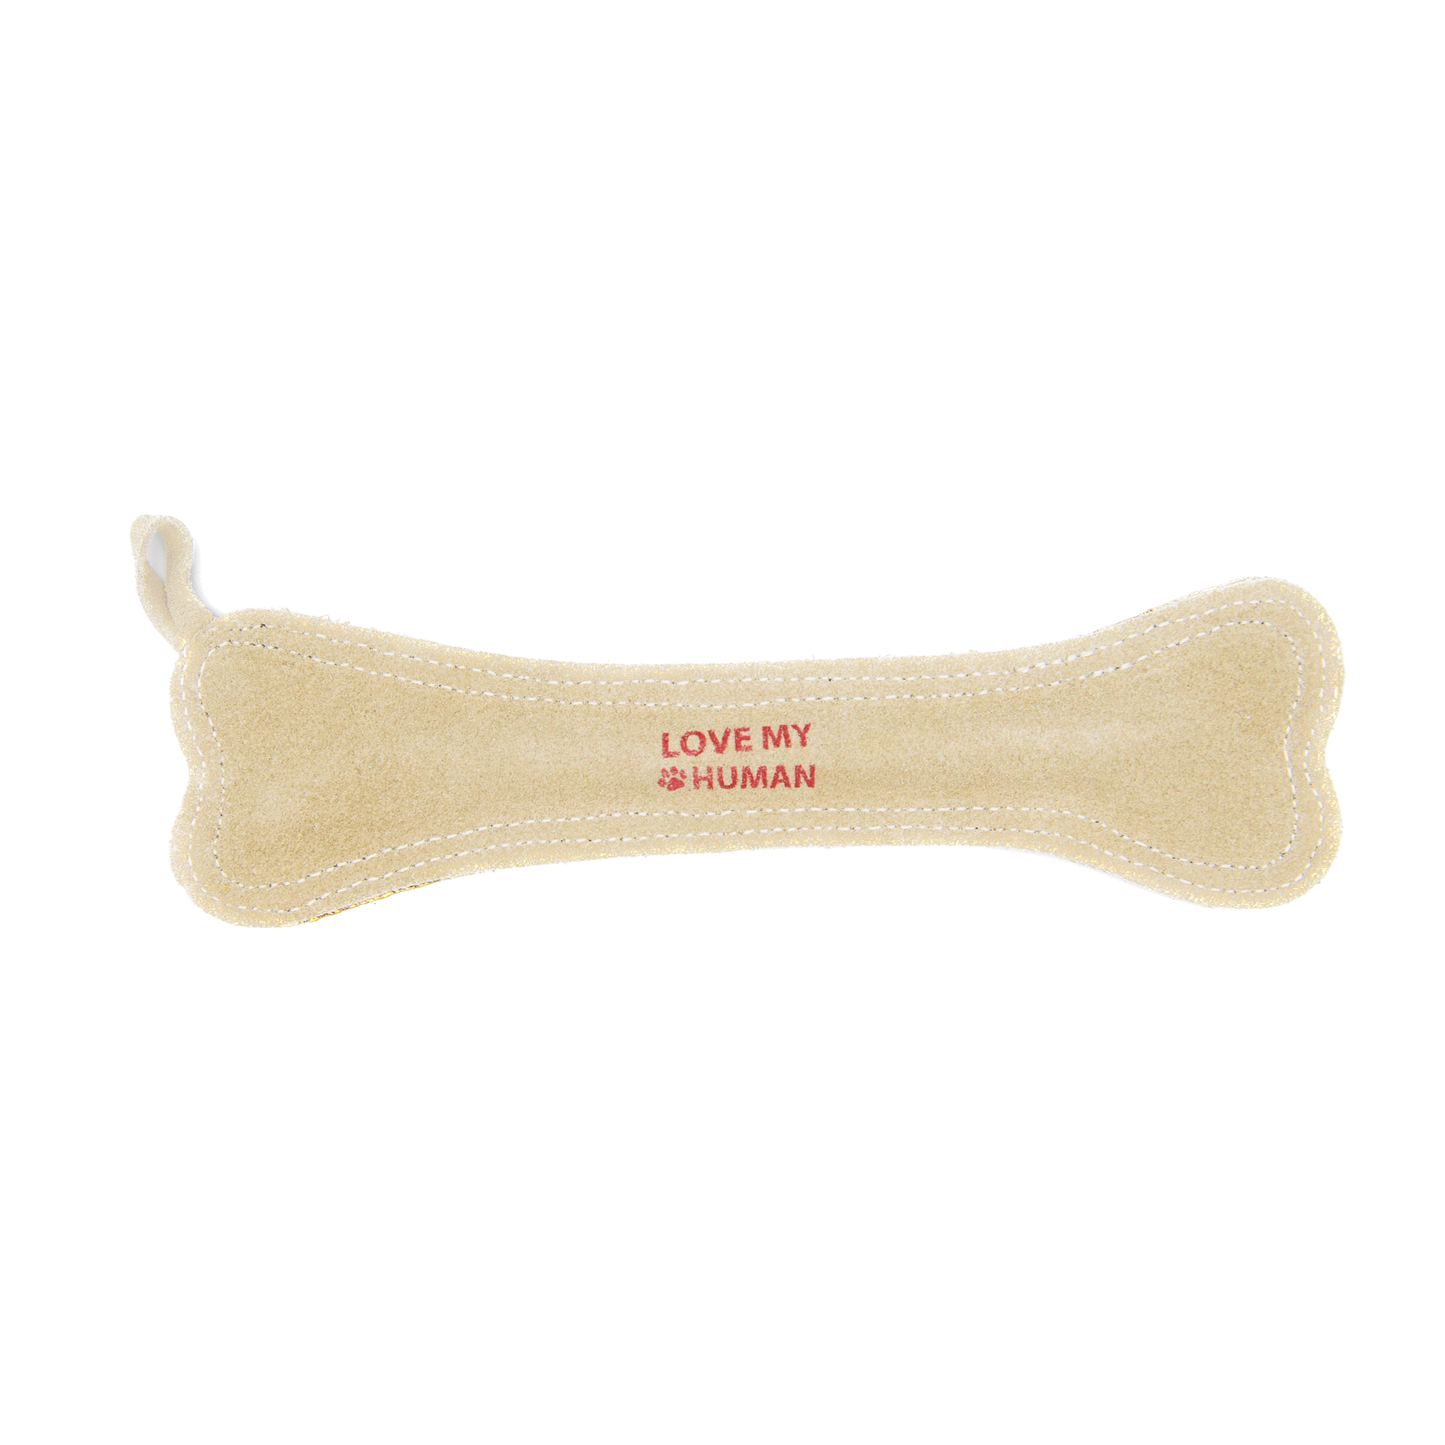 lmh bone toy